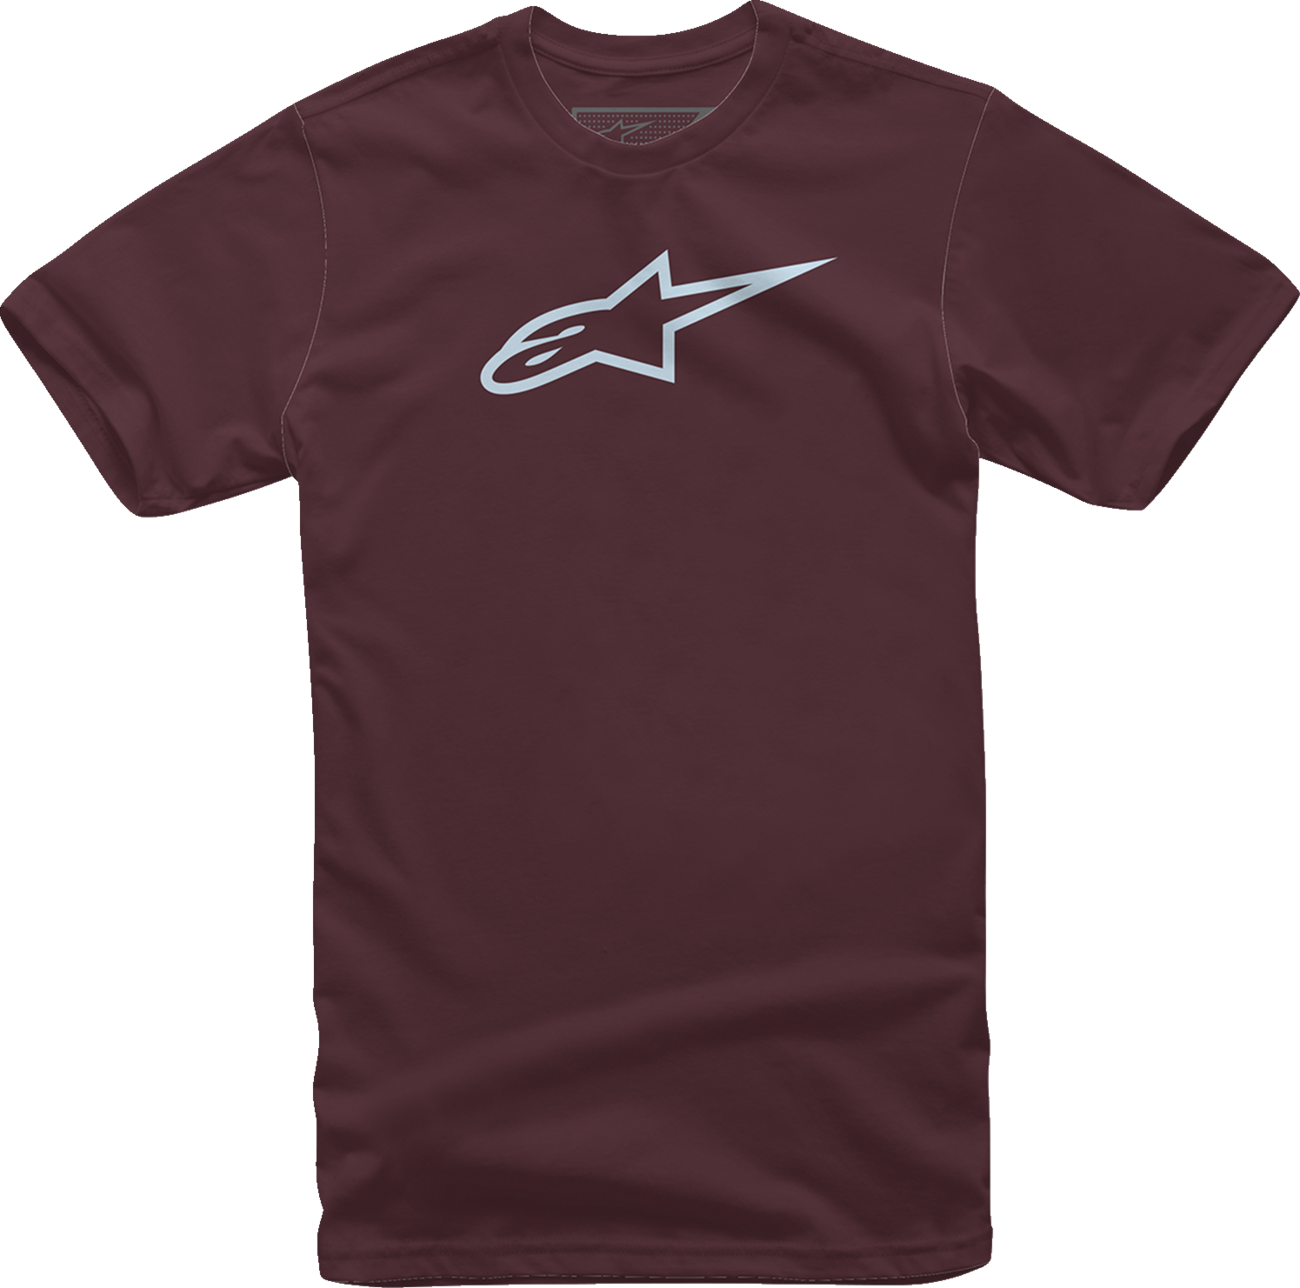 ALPINESTARS Ageless T-Shirt - Maroon/Mist - XL 1032720309067XL